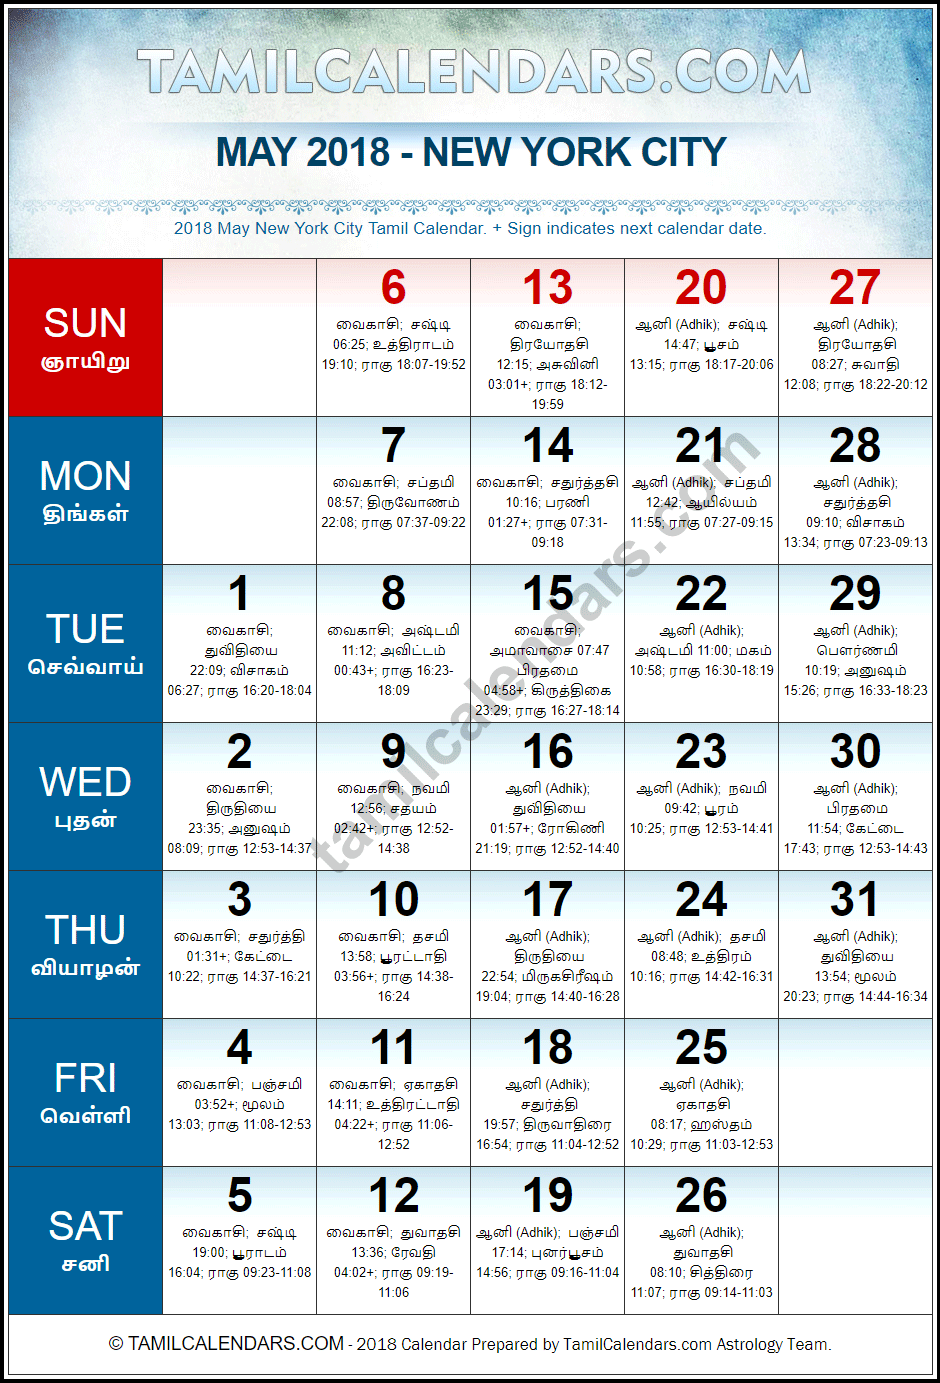 May 2018 Tamil Calendar for New York, USA